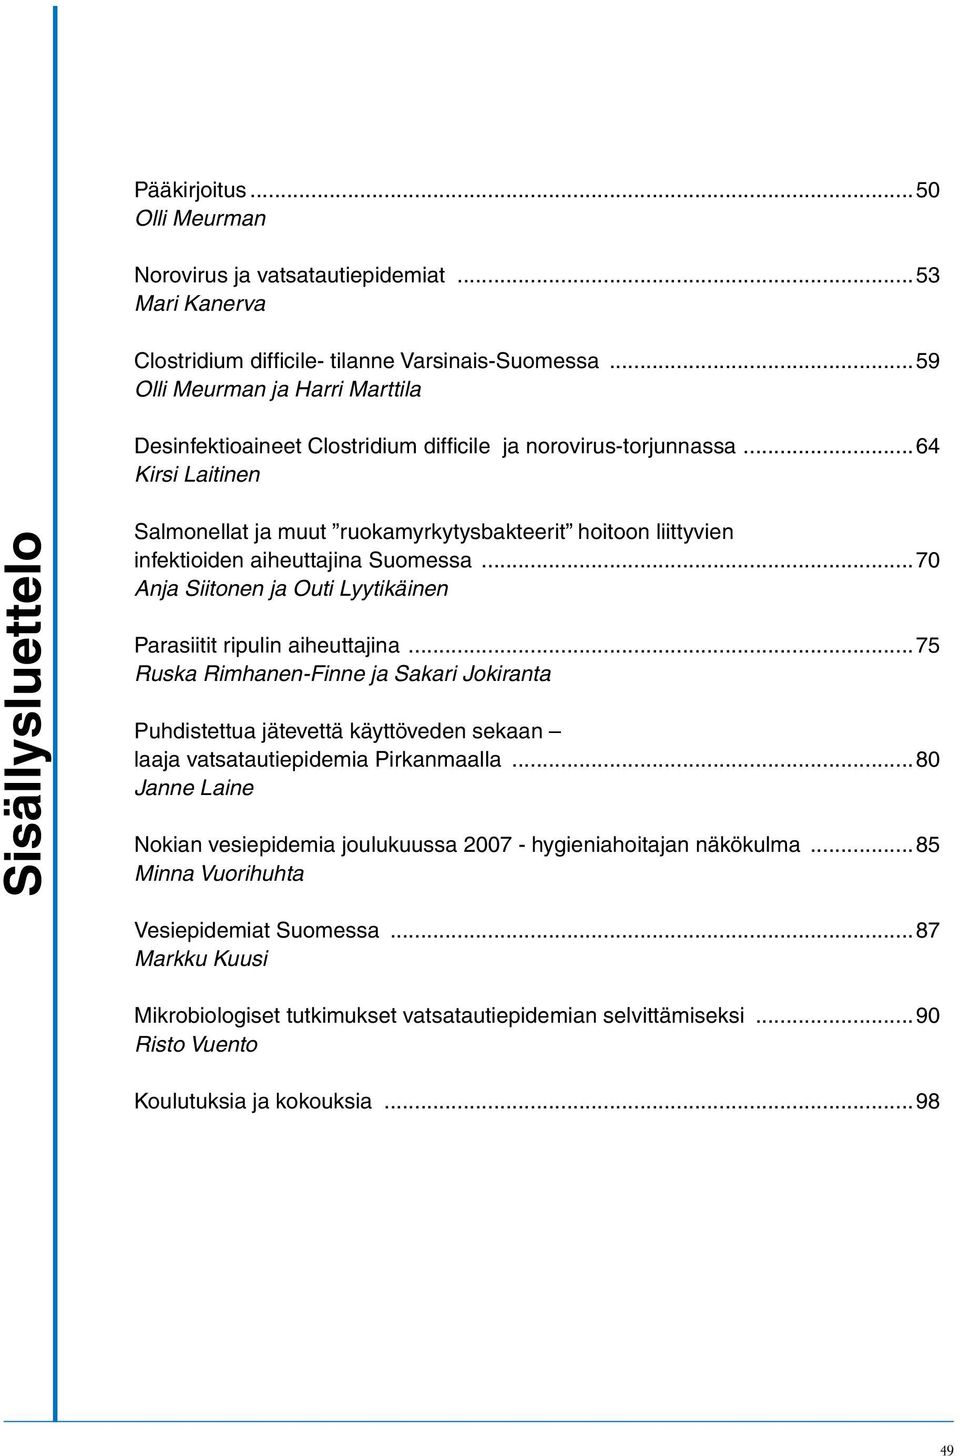 ..64 Kirsi Laitinen Sisällysluettelo Salmonellat ja muut ruokamyrkytysbakteerit hoitoon liittyvien infektioiden aiheuttajina Suomessa.